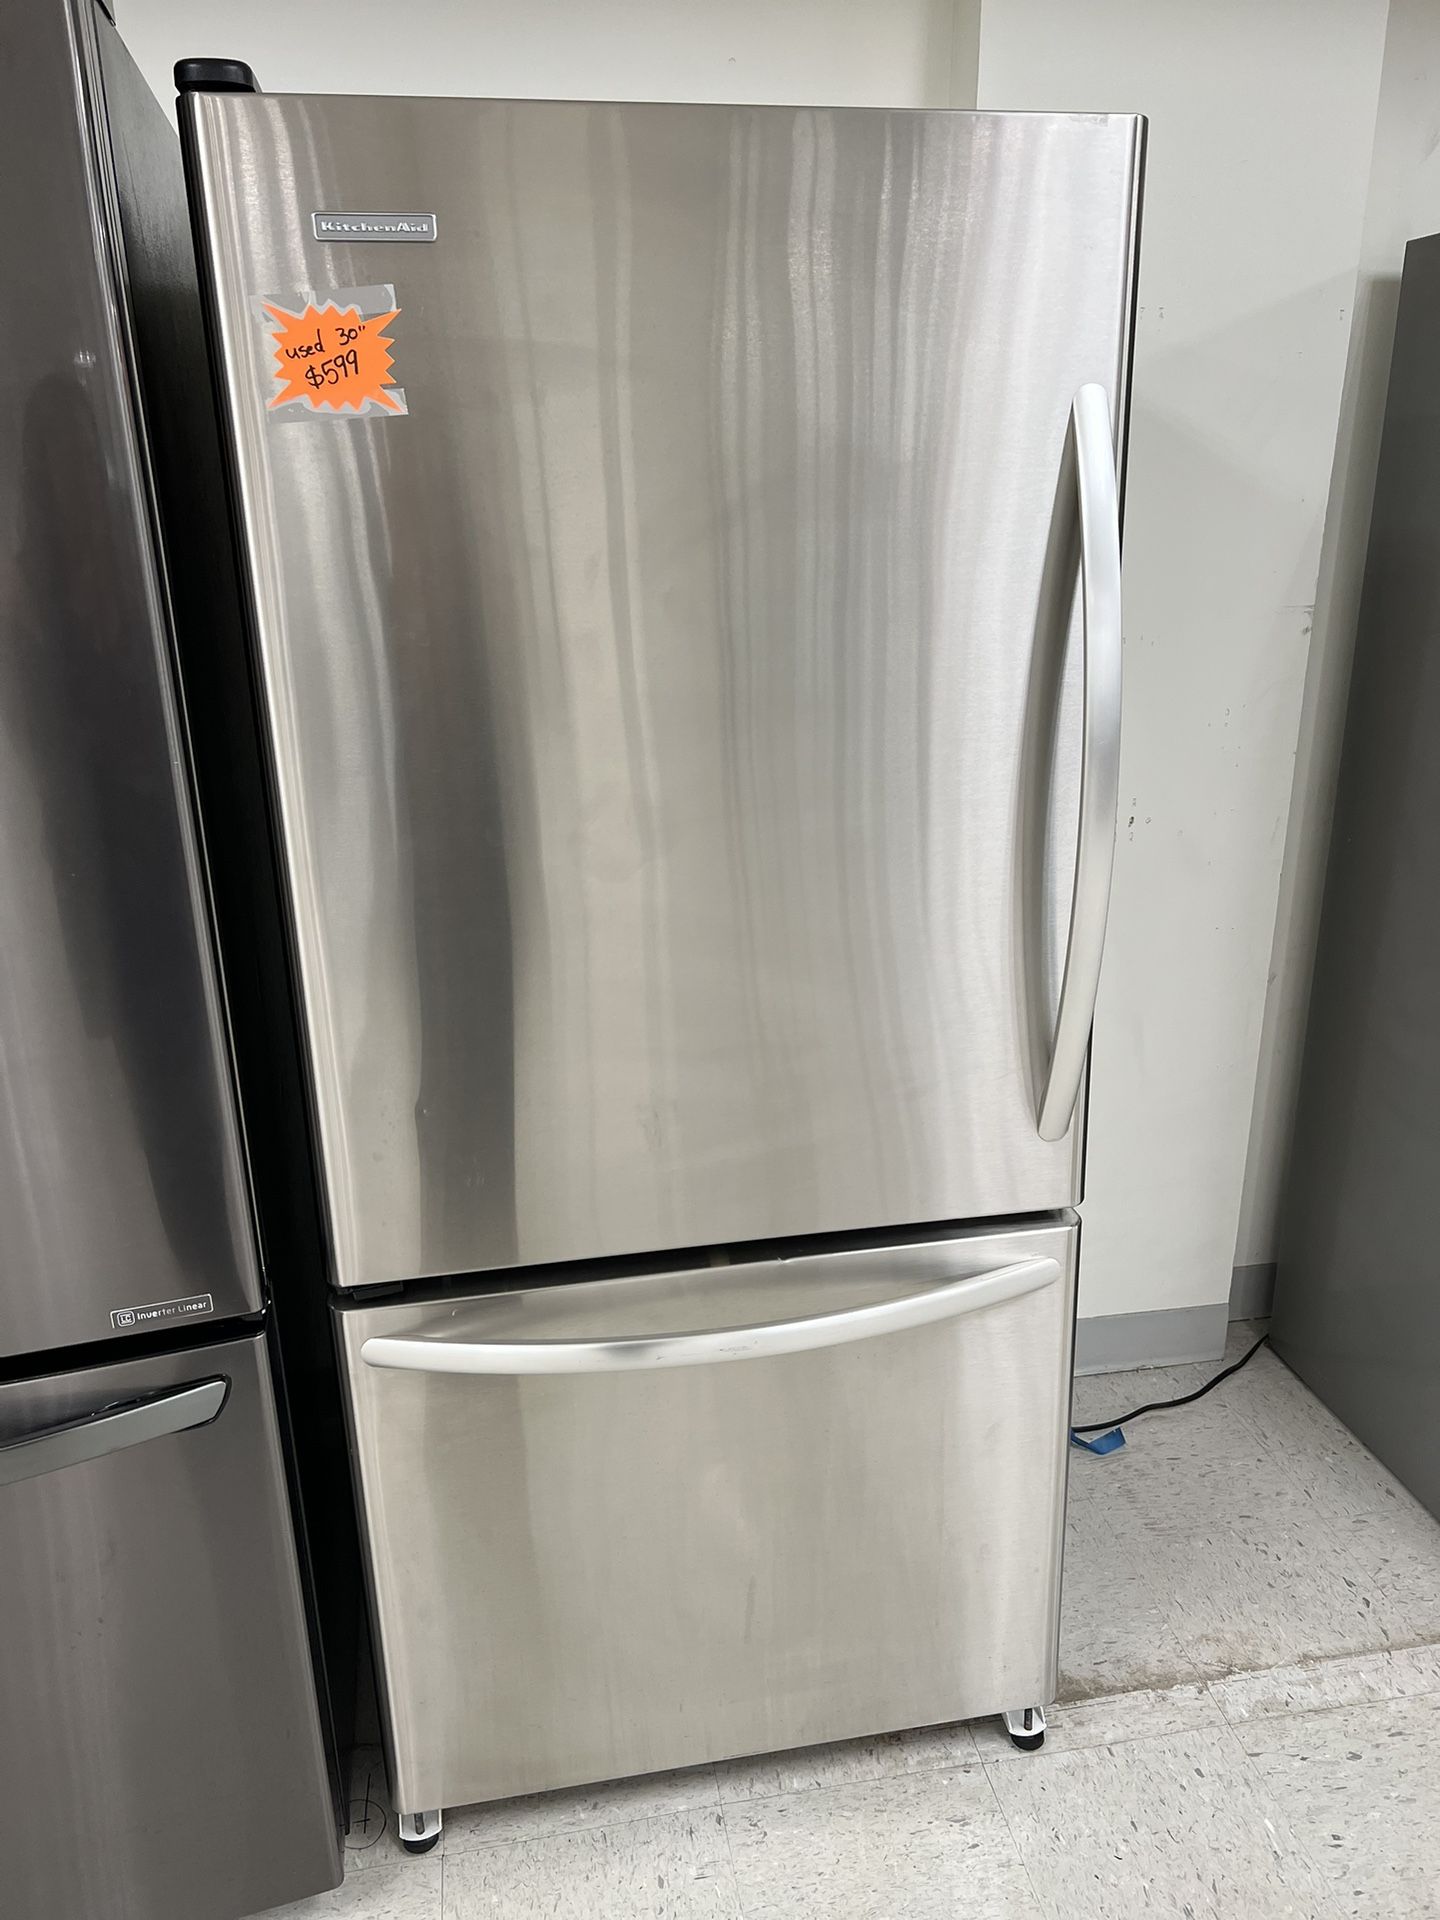 Kitchenaid Bottom Freezer Refrigerator 30” Stainless Steel 4 Months Warranty 